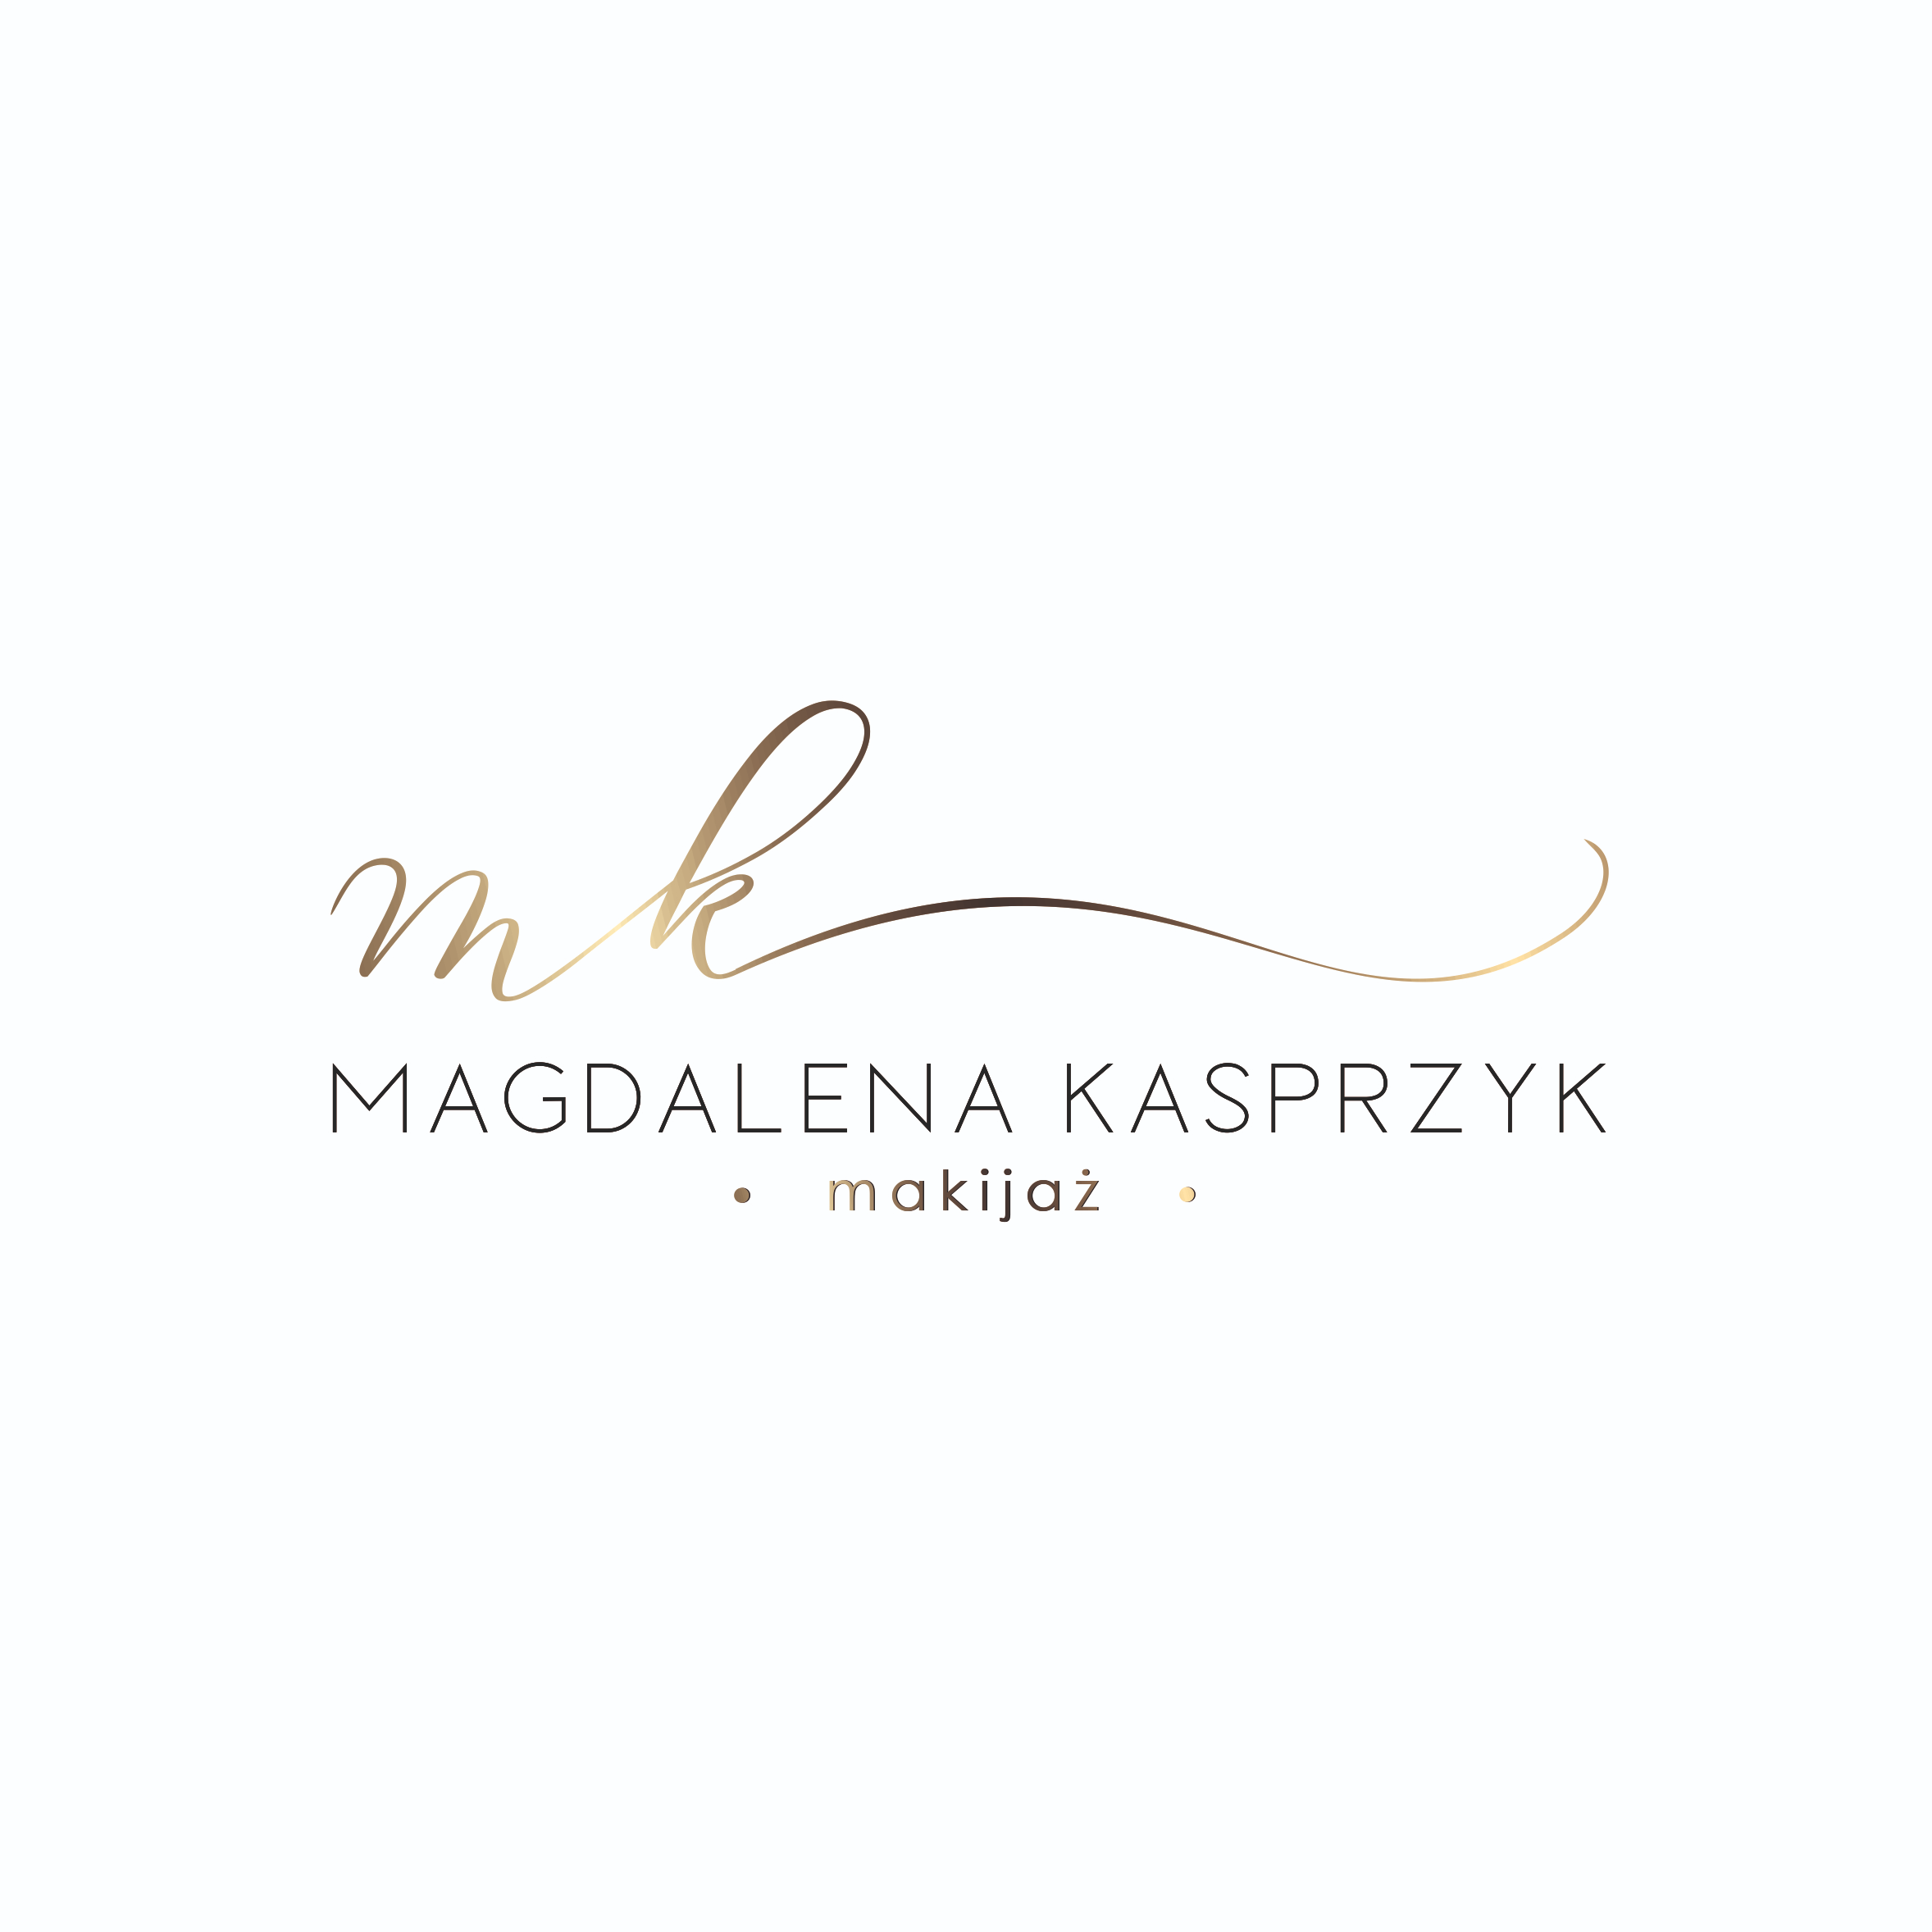 Makijaż Magdalena Kasprzyk, Miodowa 3, 62-050, Krosno